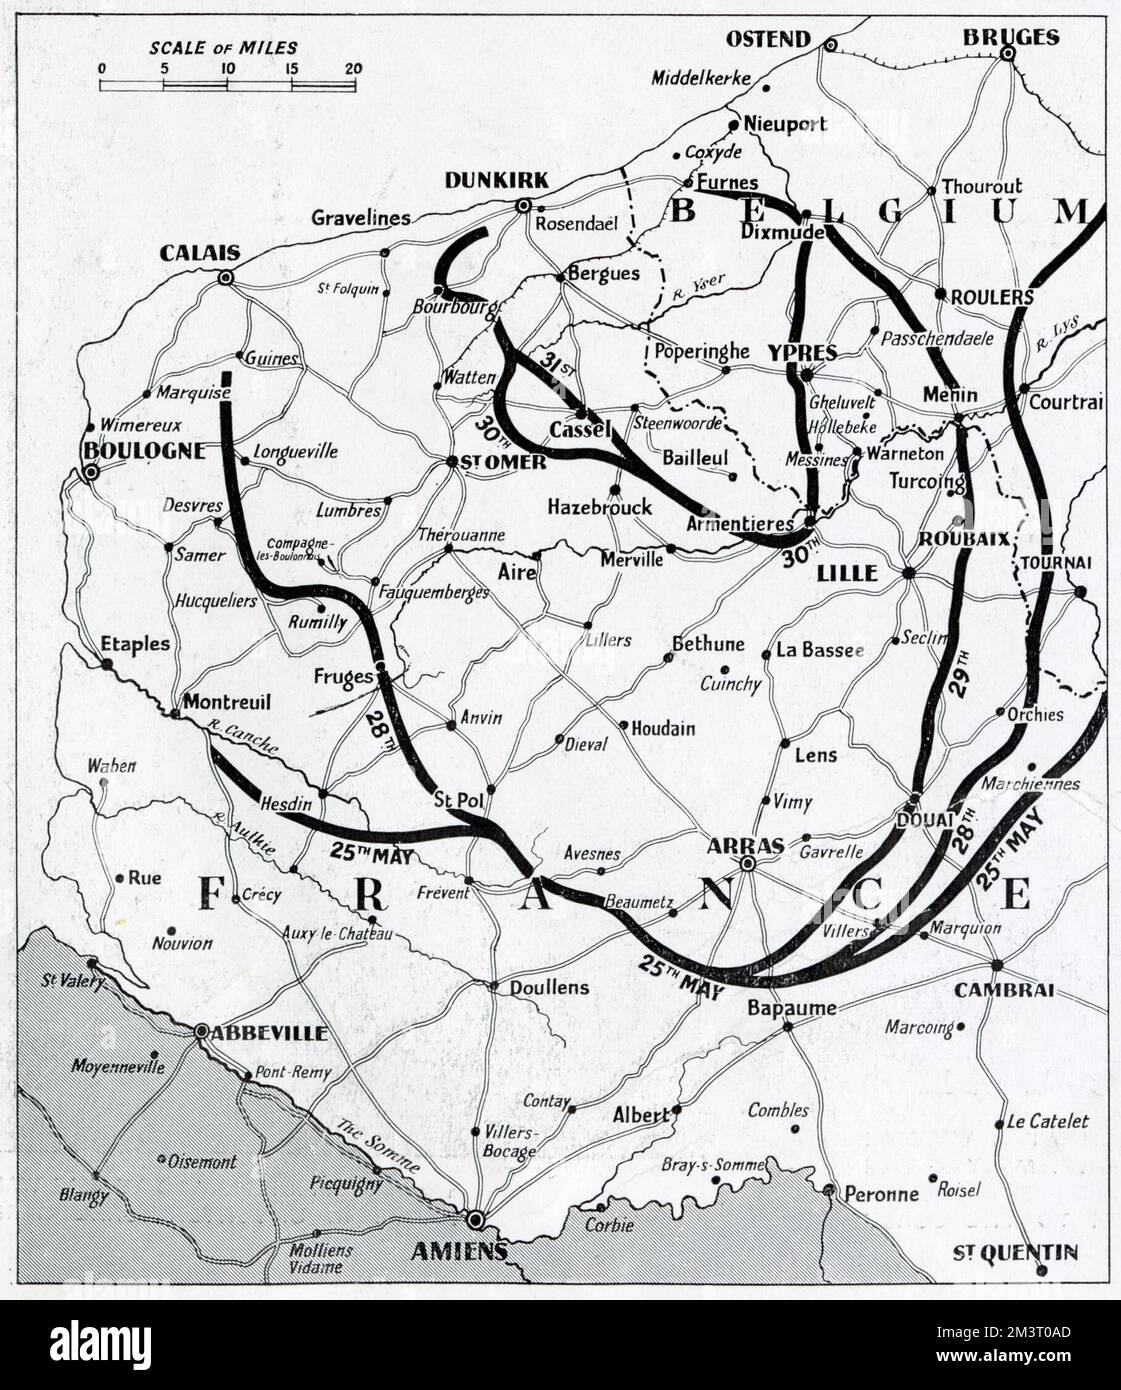 Karte von Nordfrankreich und Belgien, die die Bildung der Lücke im Gebiet Bapaume zeigt, die zur Schließung der Alliierten und zum Rückzug in Richtung Küste führt. Datum: 1940 Stockfoto